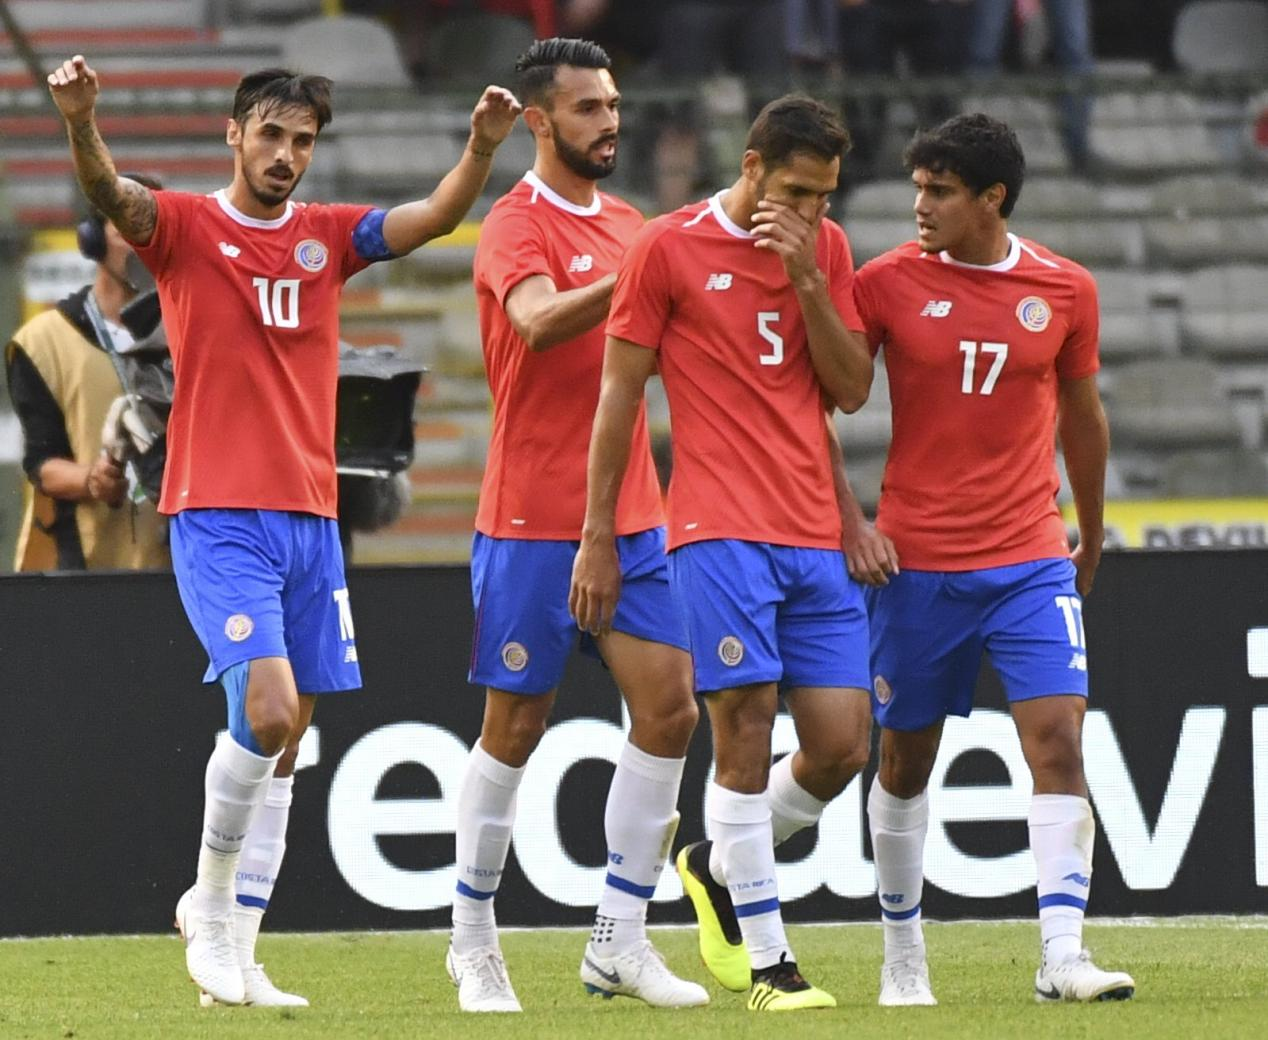 哥斯达黎加国家男子足球队即时比分,博努奇,巴斯托尼,罗马尼奥利